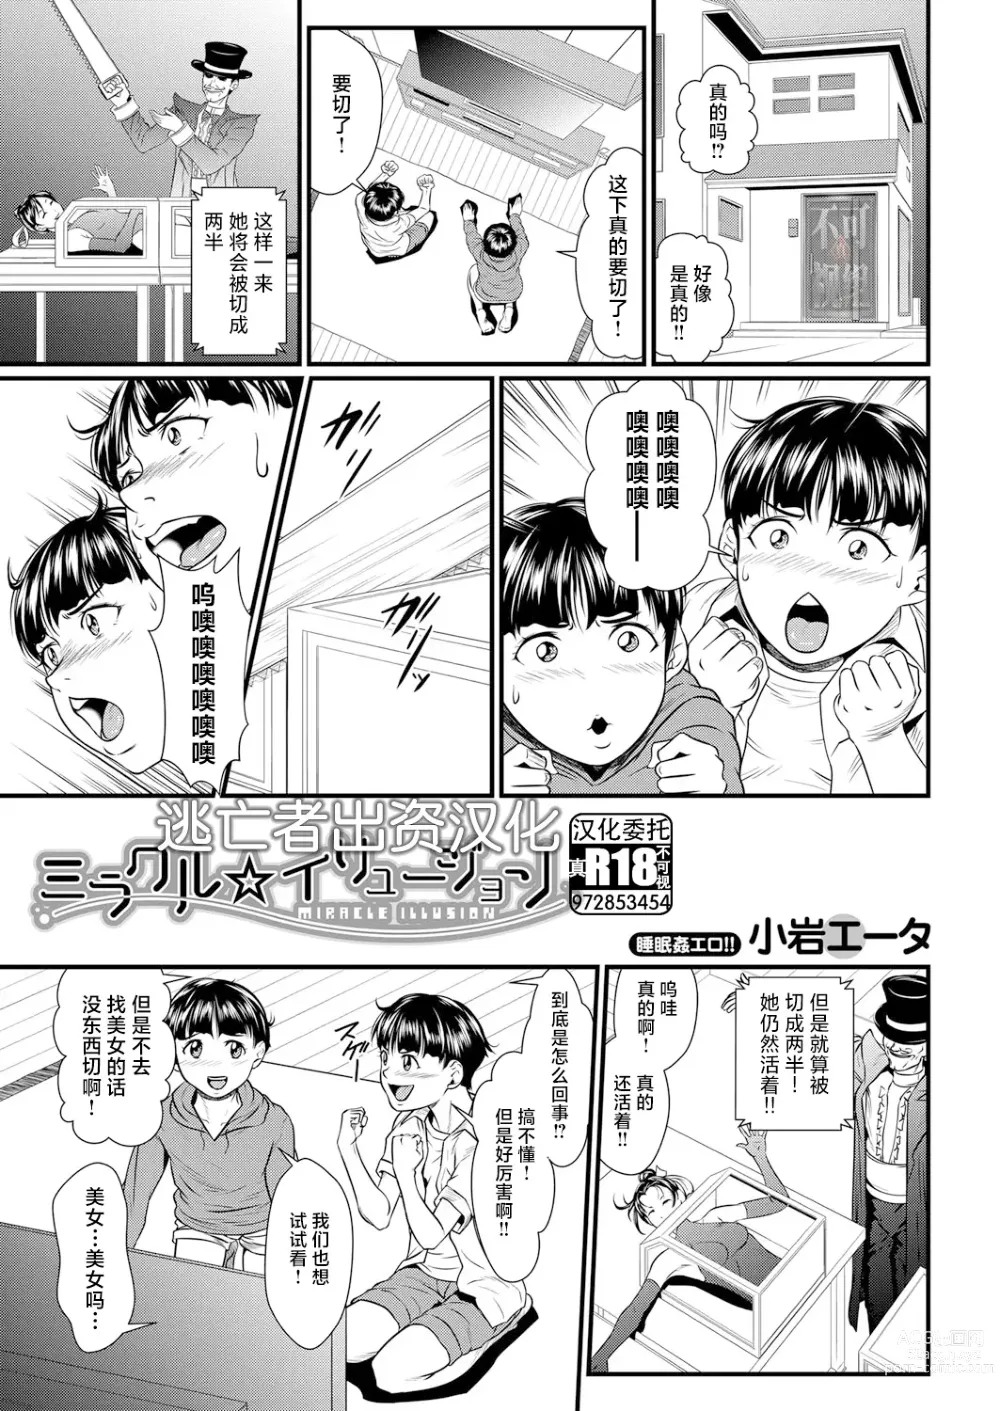 Page 1 of manga Miracle Illusion